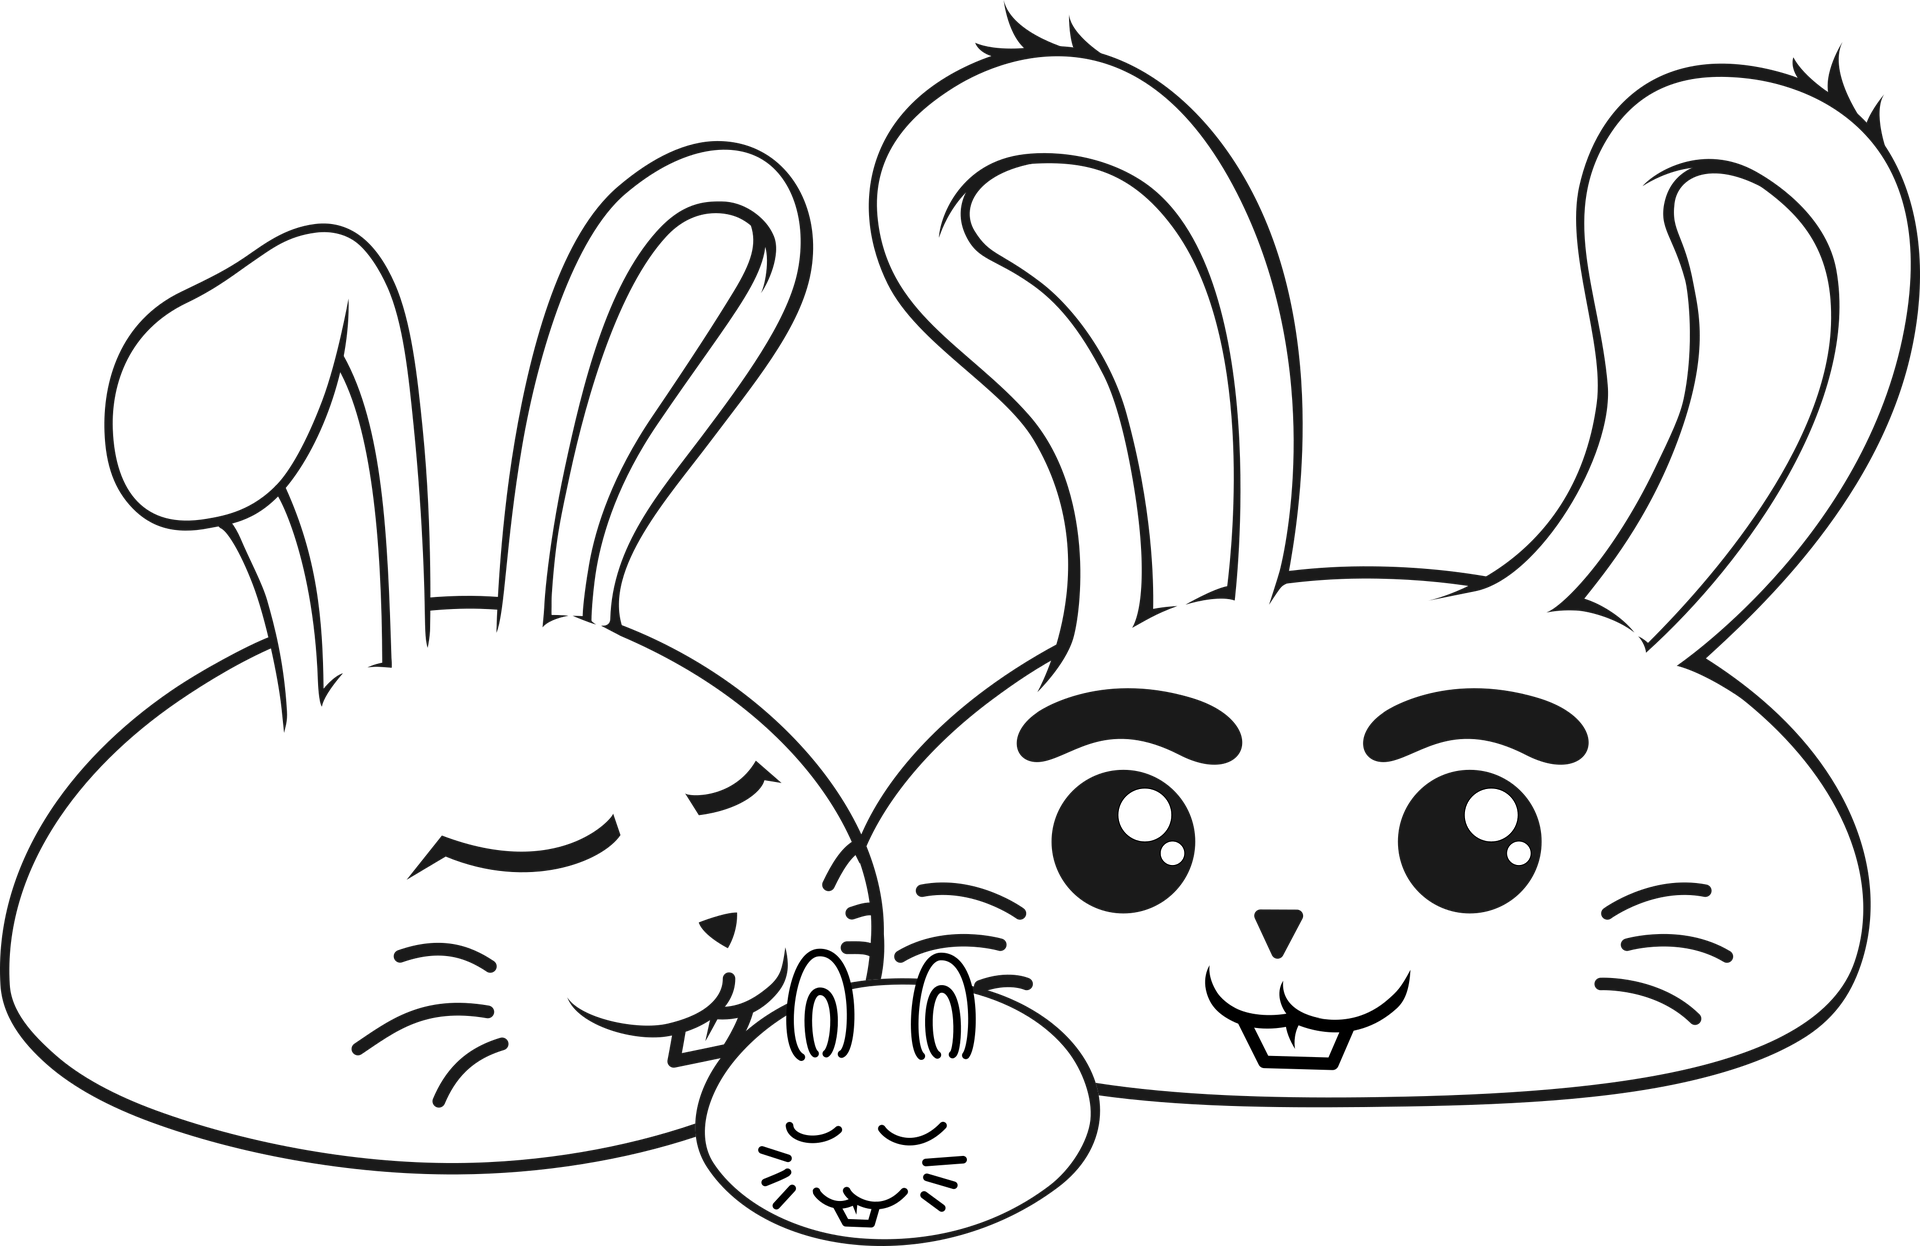  HOMSFOU Cartoon-Kaninchen-Ornamente Badezimmerdekorationen  Wohnkultur Statuen Hasenornament Geburtstagsgeschenke Für Kinder Kaninchen-dekor  Süße Hasendekoration Desktop-Kaninchen-Statue